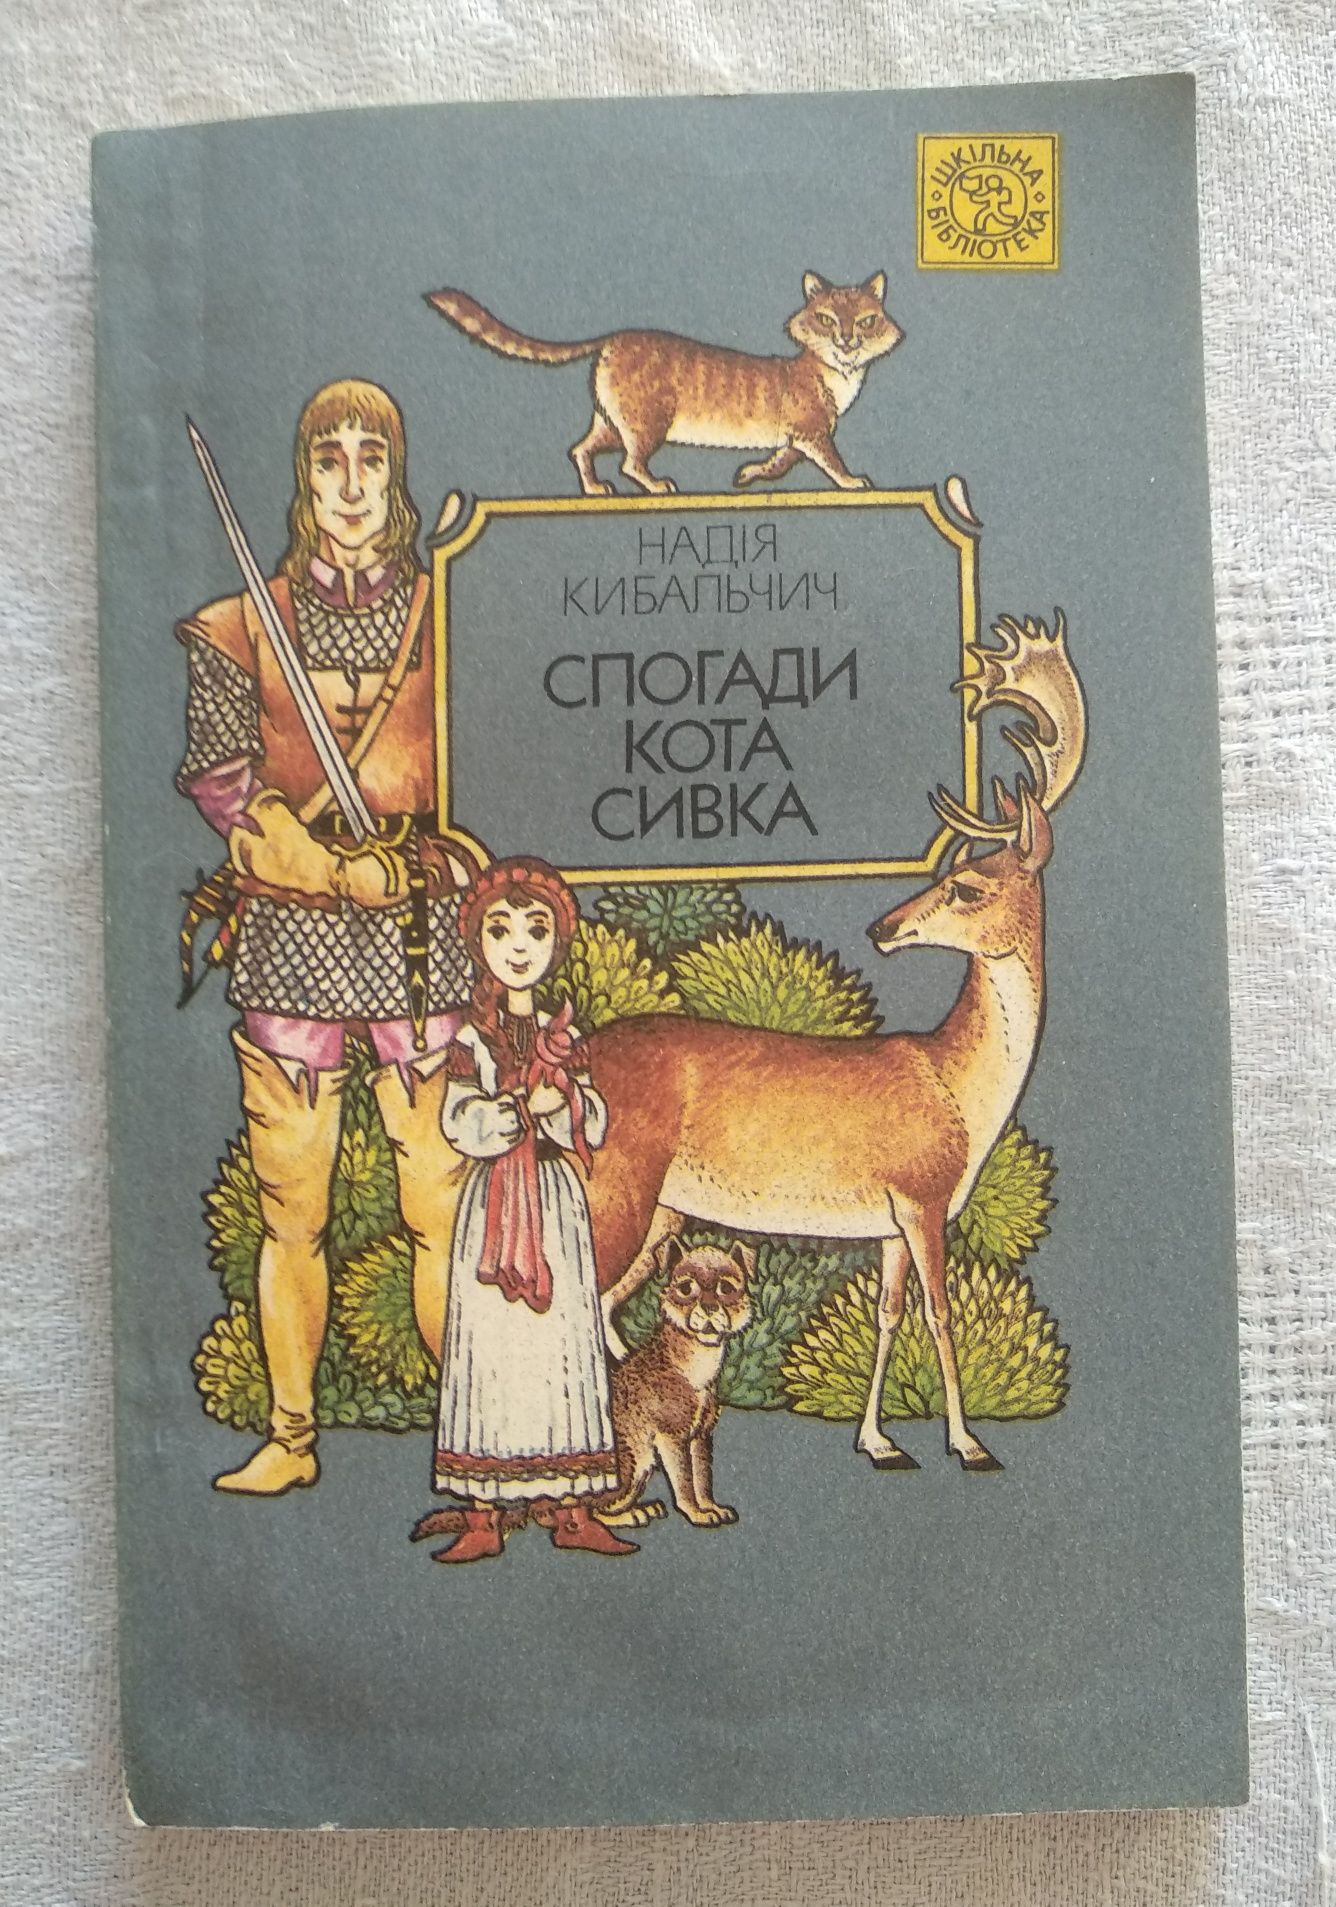 Н. Кибальчич "Спогади кота Сивка" дитяча книга